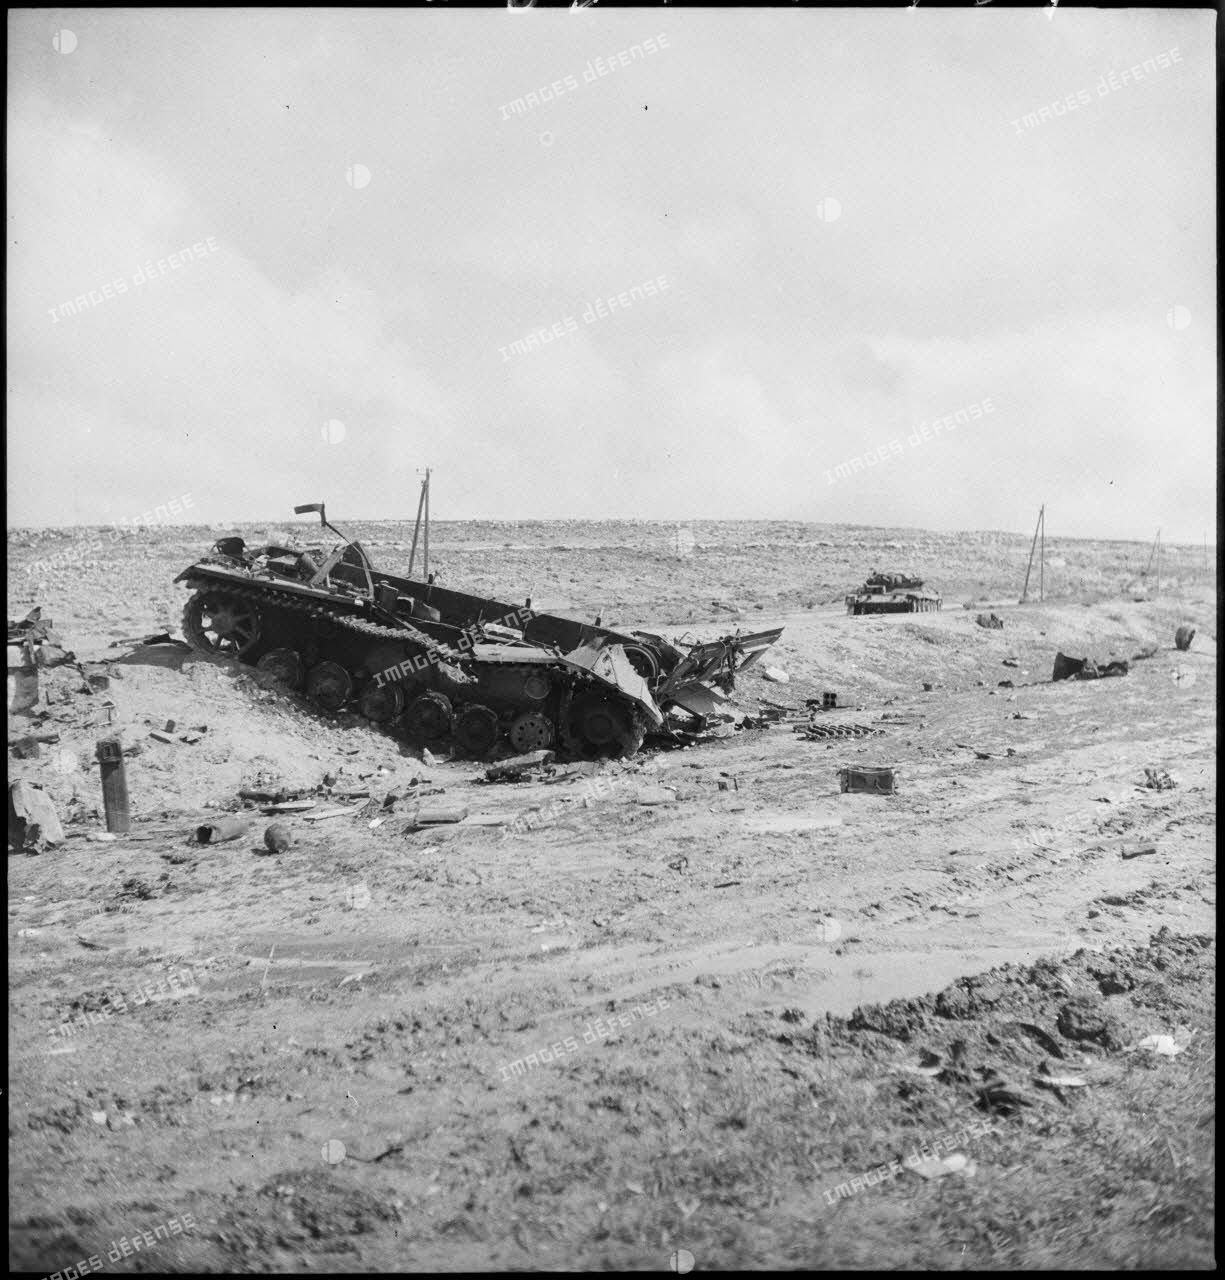 Epave d'un char moyen allemand Panzer-III sur le champ de bataille de Kasserine.